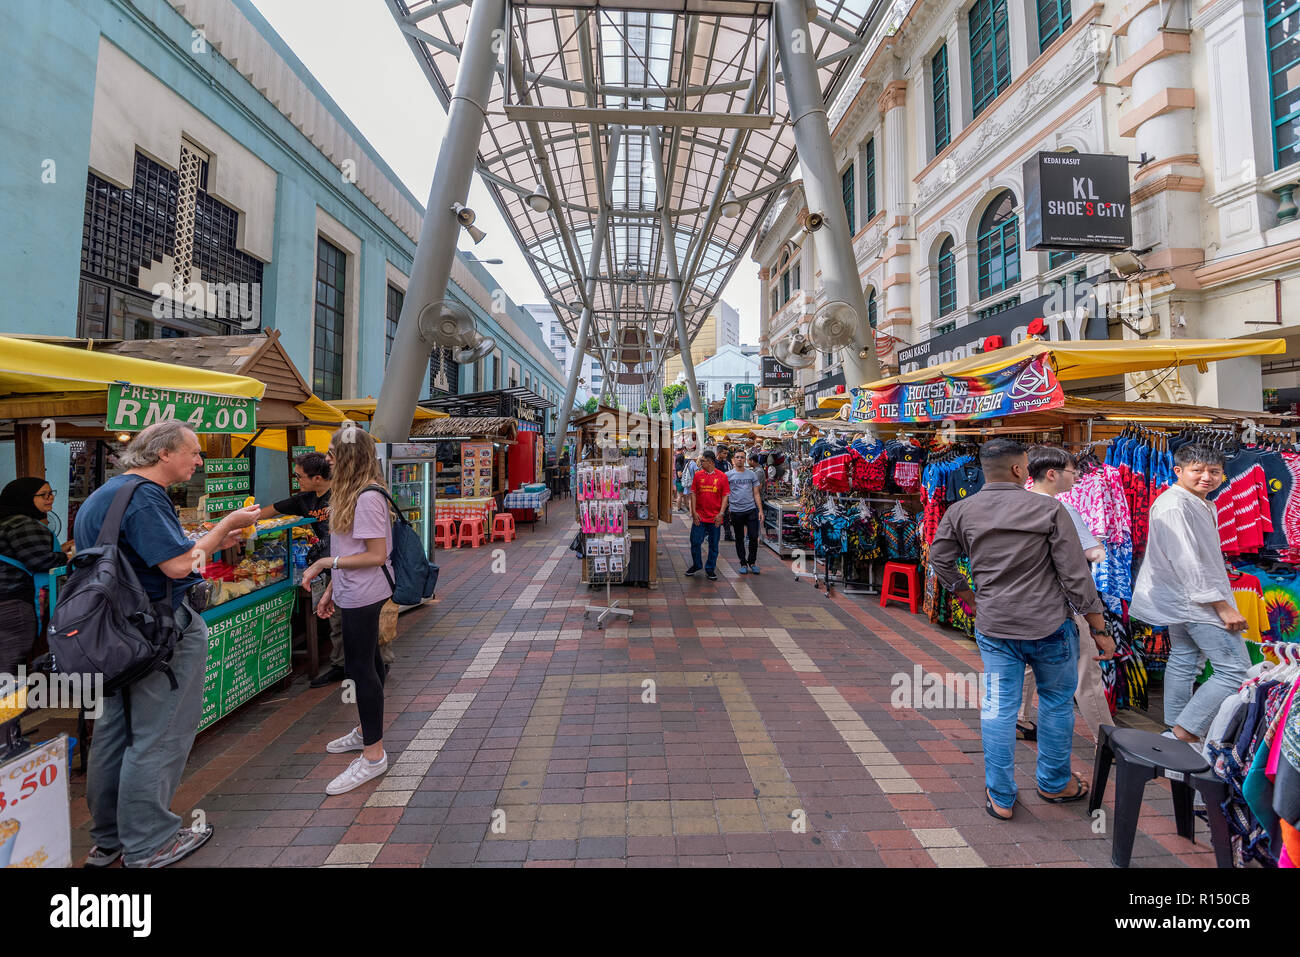 KUALA LUMPUR, Malesia - 21 Luglio: Questo è il mercato centrale, è un luogo famoso per lo shopping nella zona del centro cittadino sulla luglio 21, 2018 a Kuala Lumpur Foto Stock